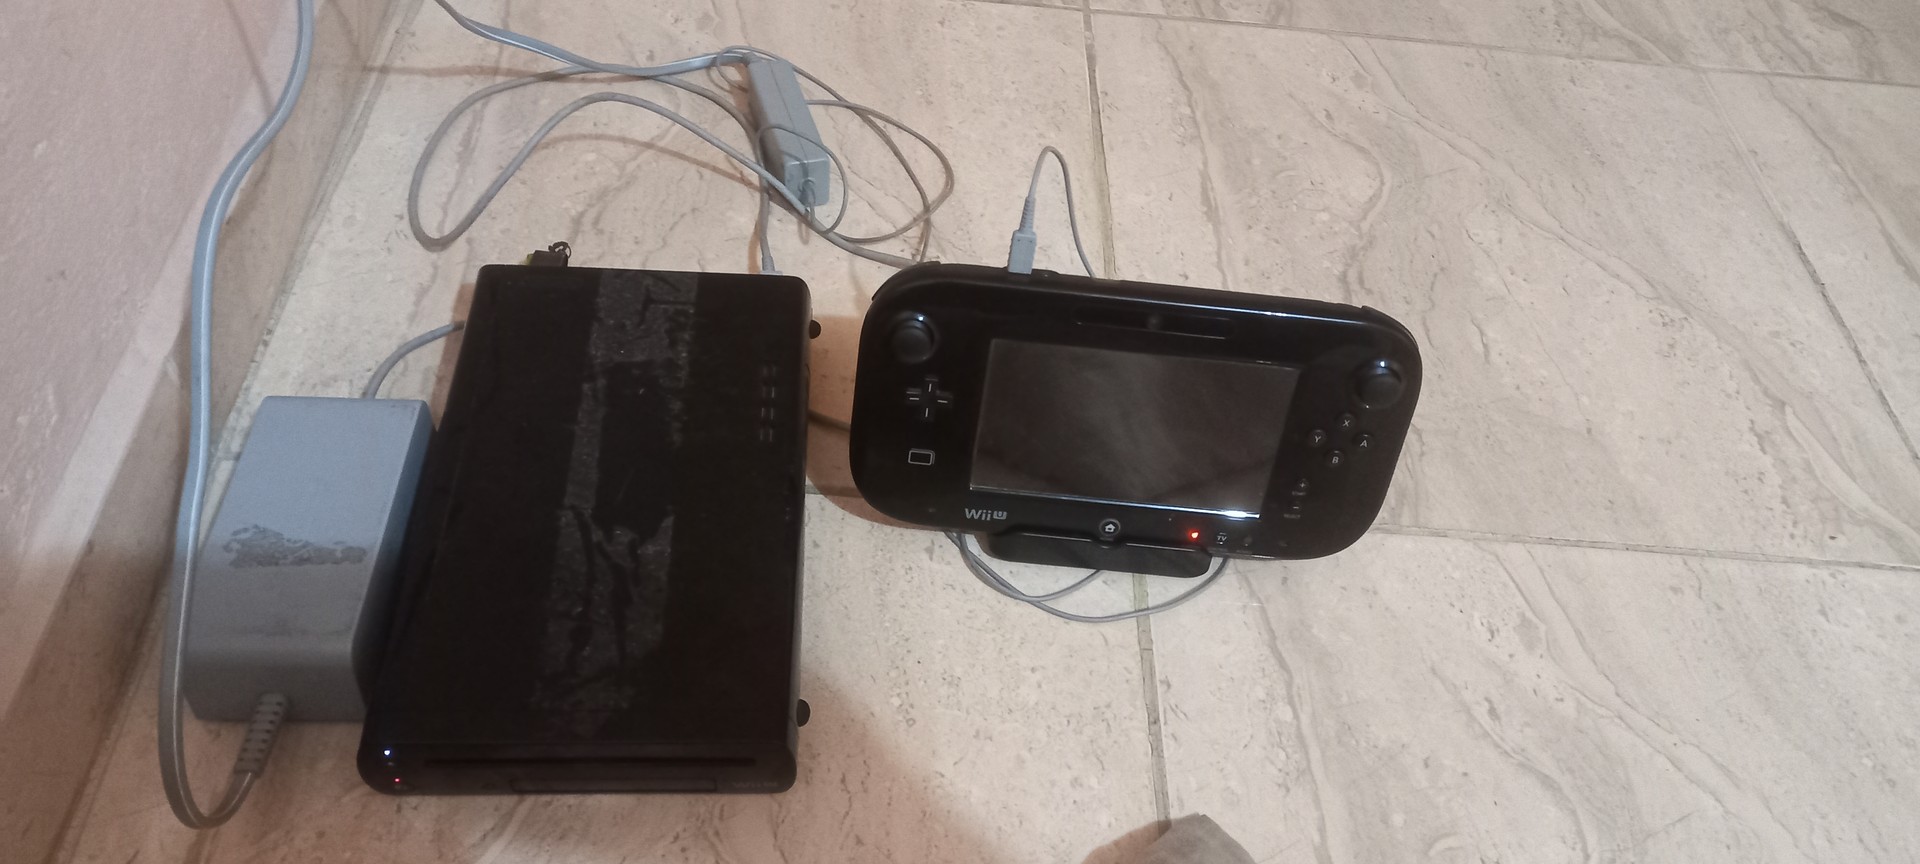 consolas y videojuegos - Wii U 